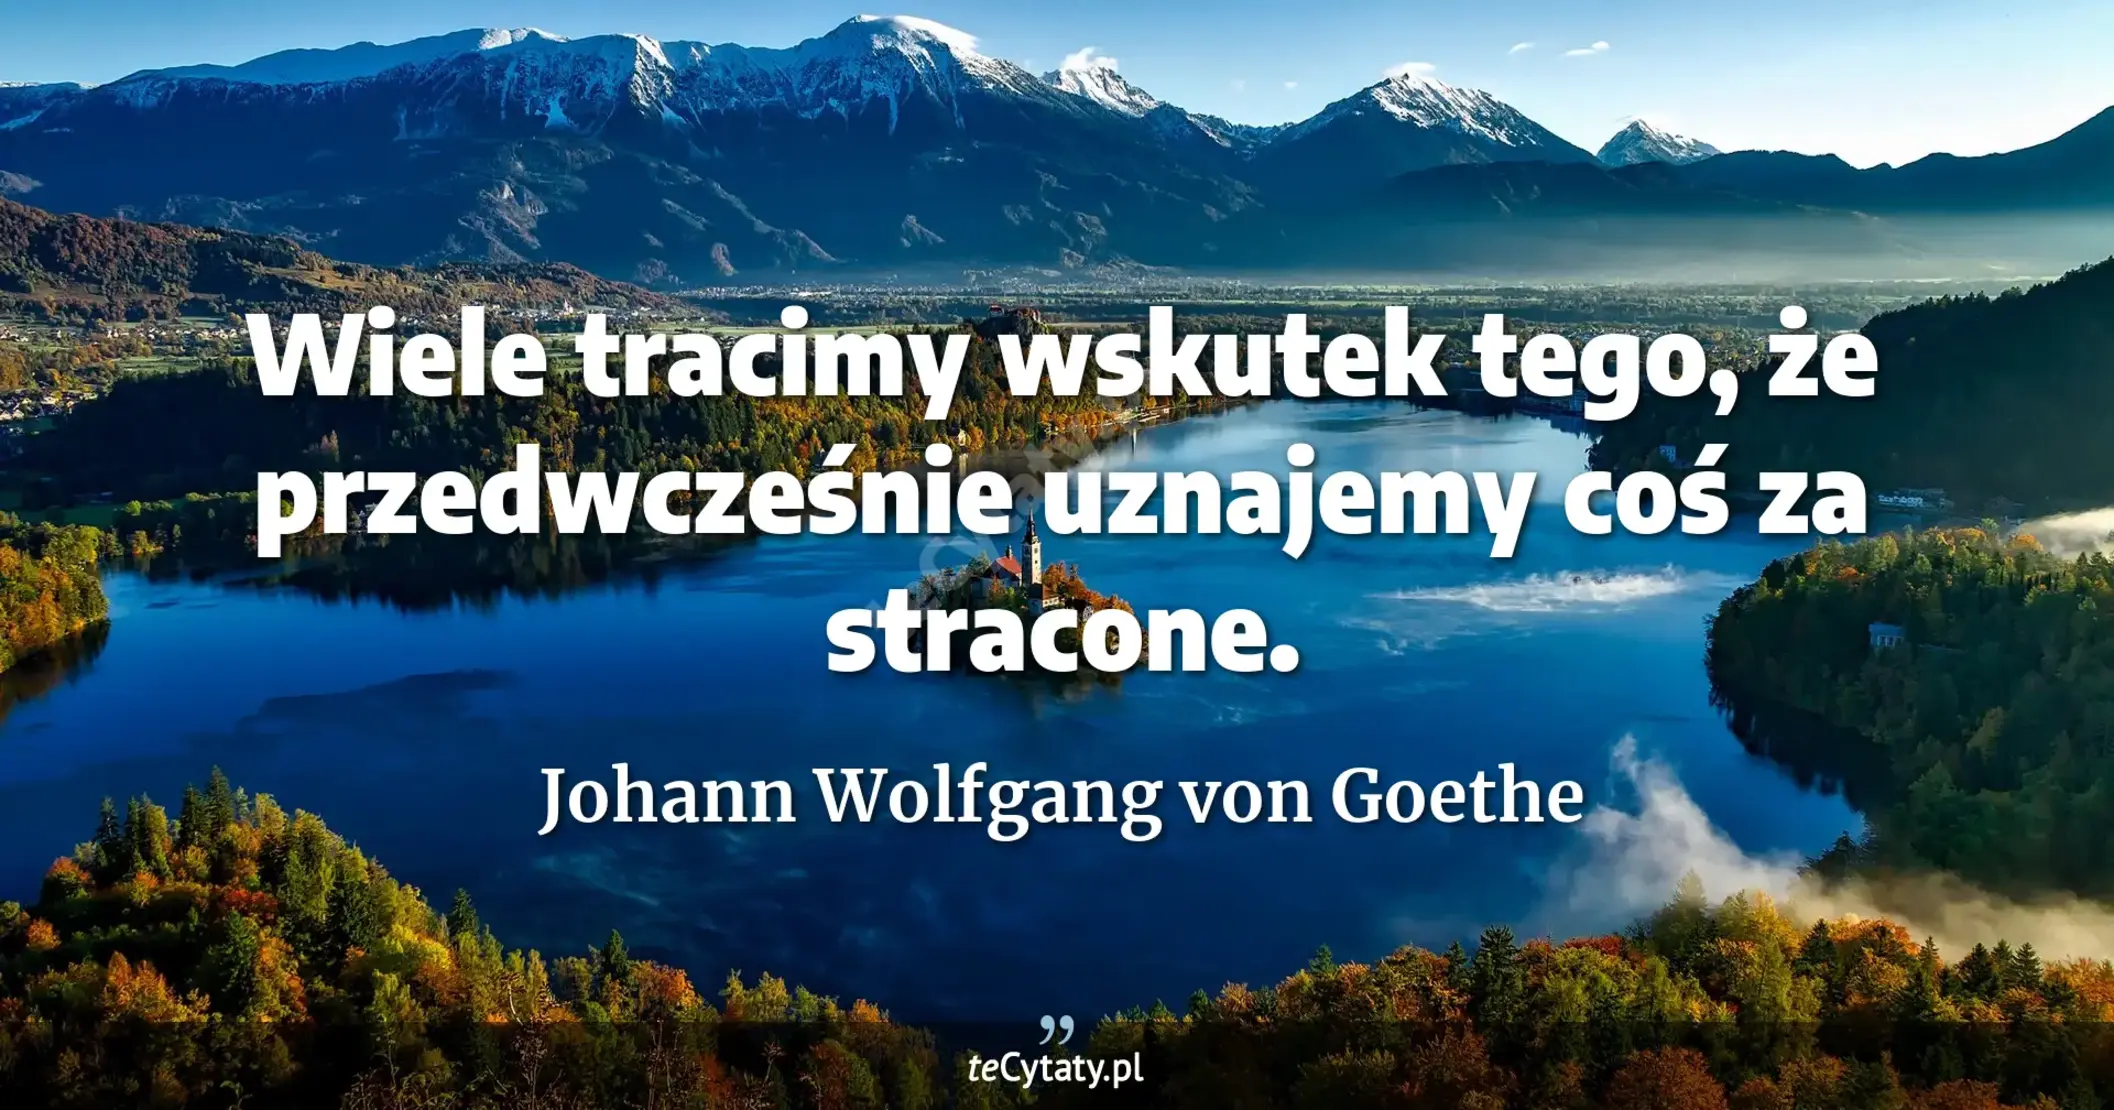 Wiele tracimy wskutek tego, że przedwcześnie uznajemy coś za stracone. - Johann Wolfgang von Goethe